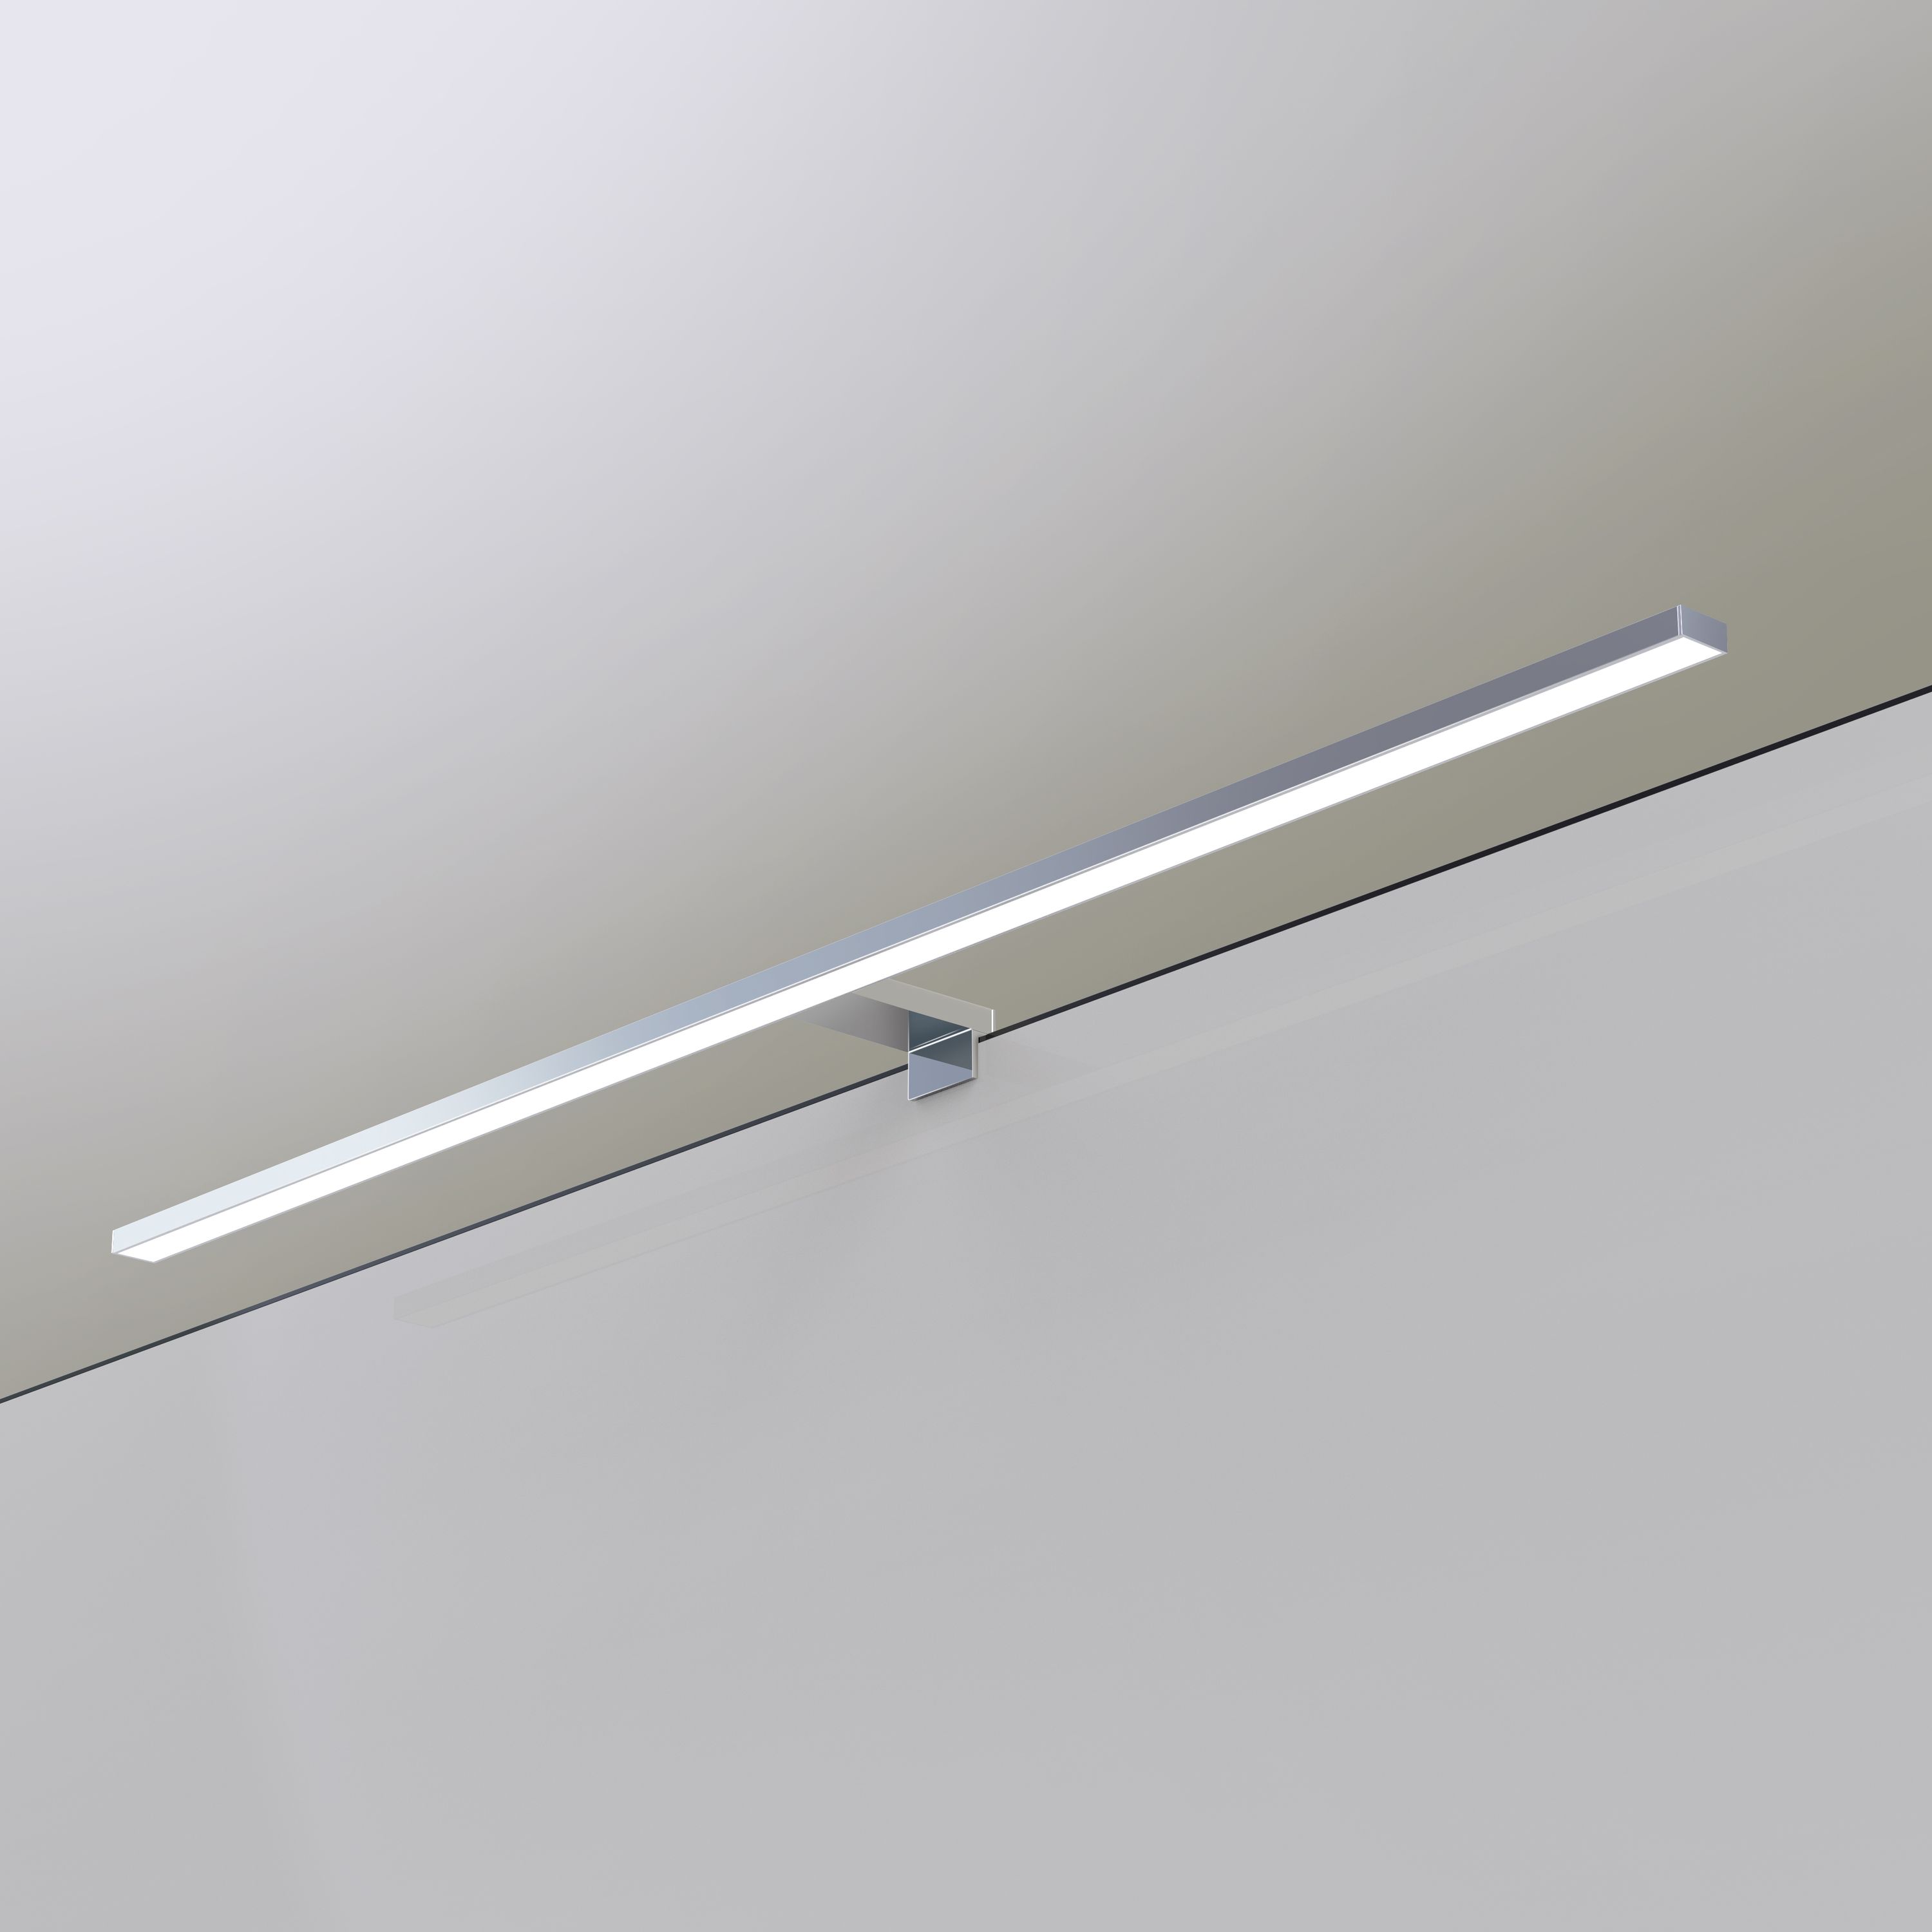 kalb | Leuchten | online 230V kalb-licht, neutralweiß, Badlampe Möbel LED einkaufen 80cm Badleuchte verchromt für Spiegelleuchte Spiegellampe